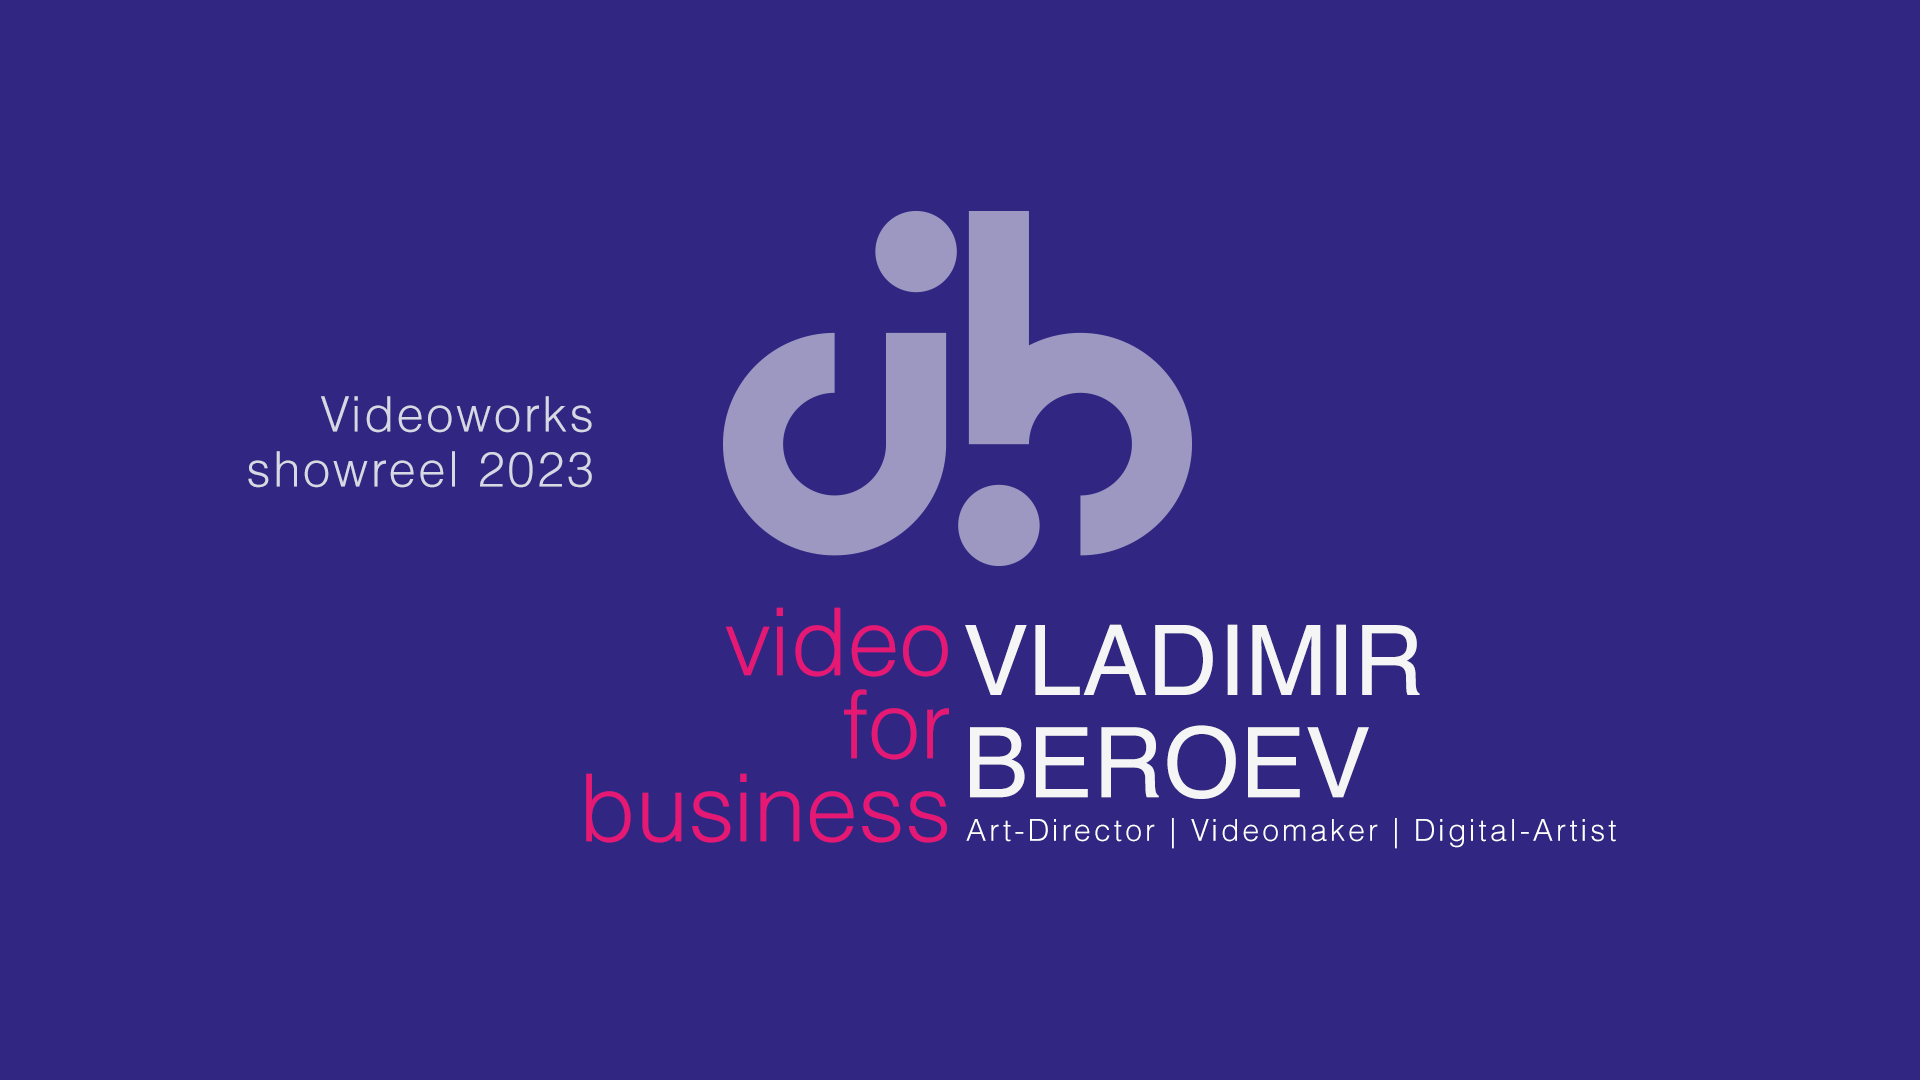 Владимир Бероев | Видео для бизнеса | Шоурил 2023